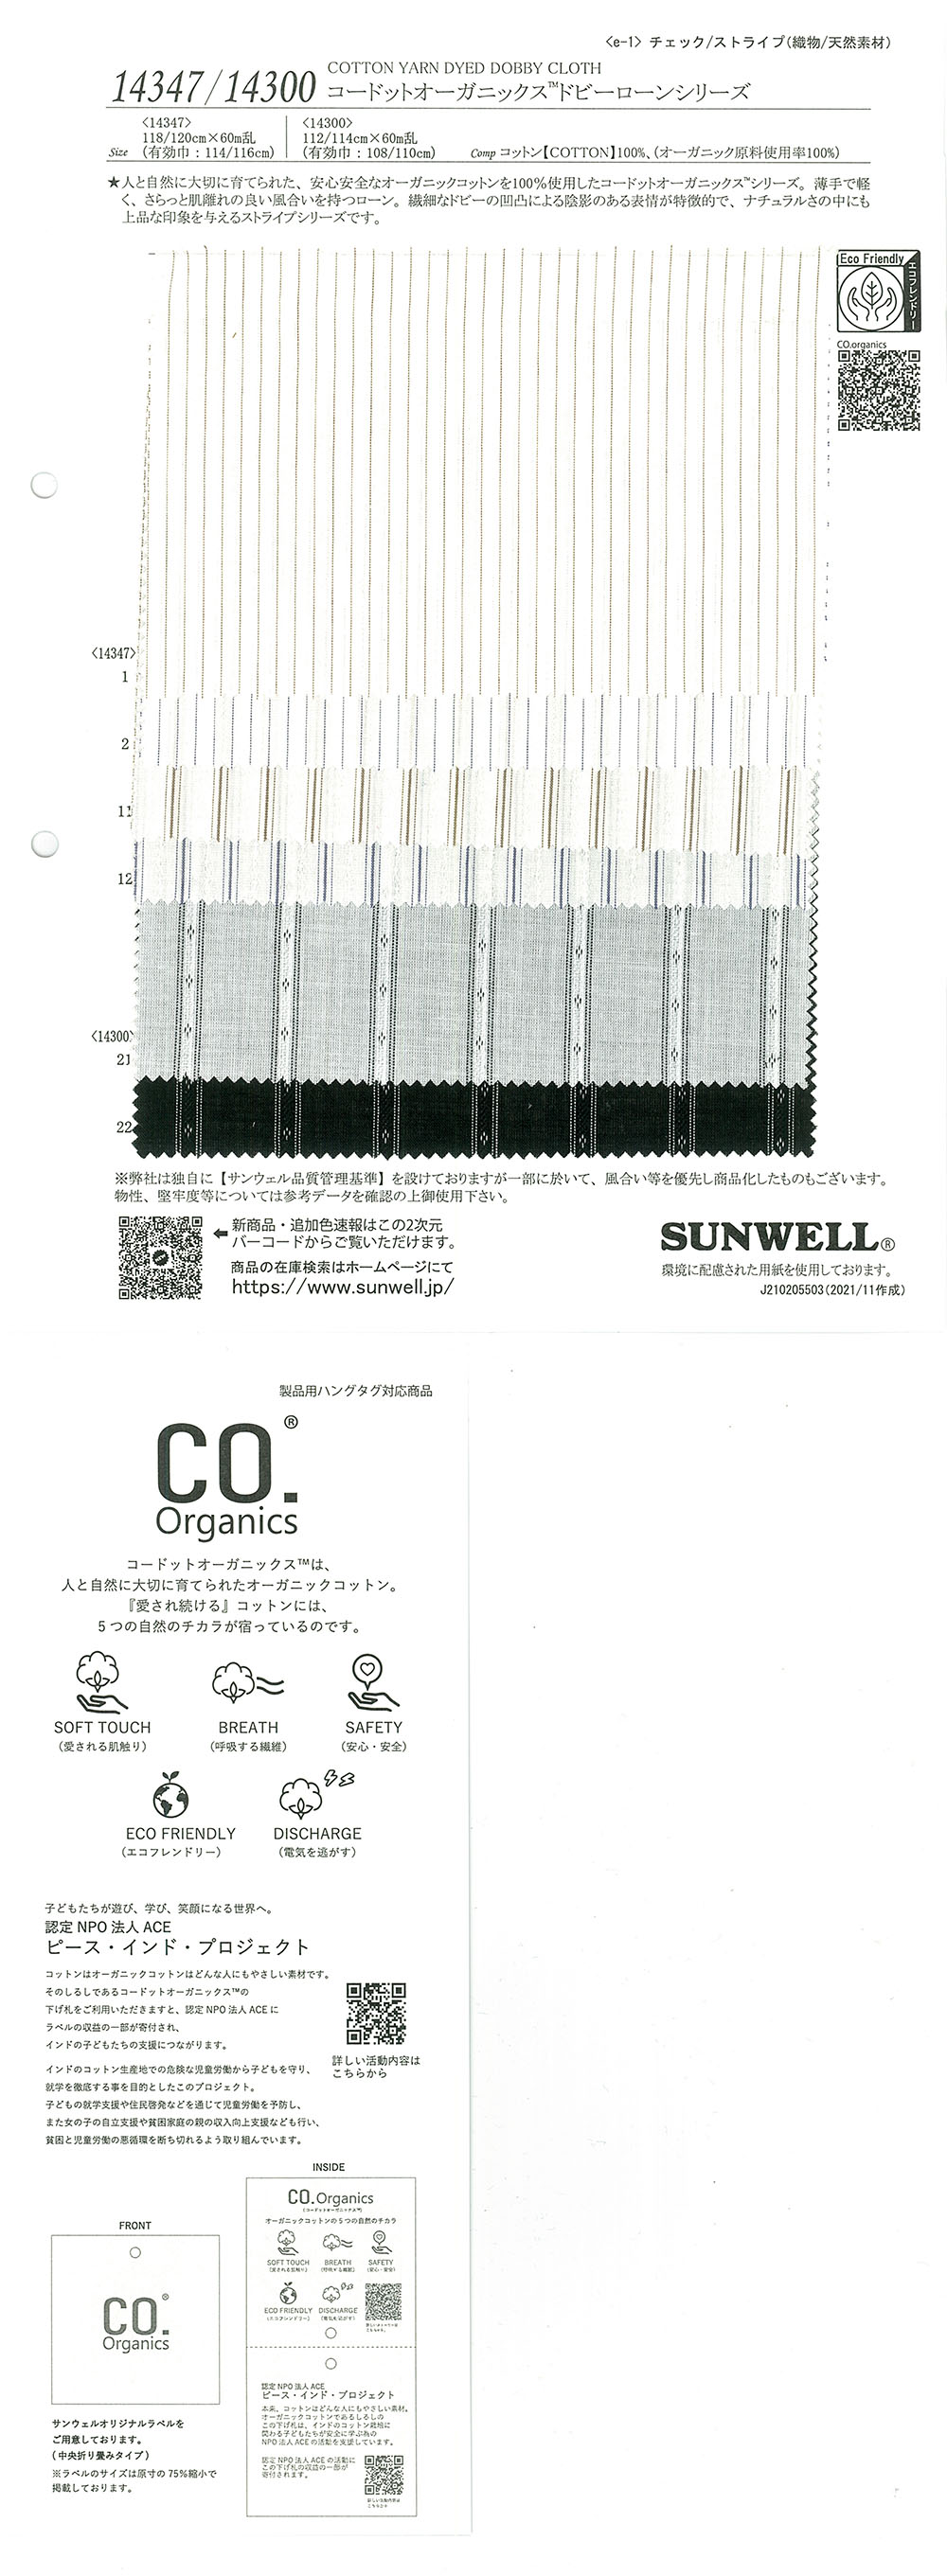 14300 코드트 유기농 (R) 도비 론 시리즈[원단] SUNWELL